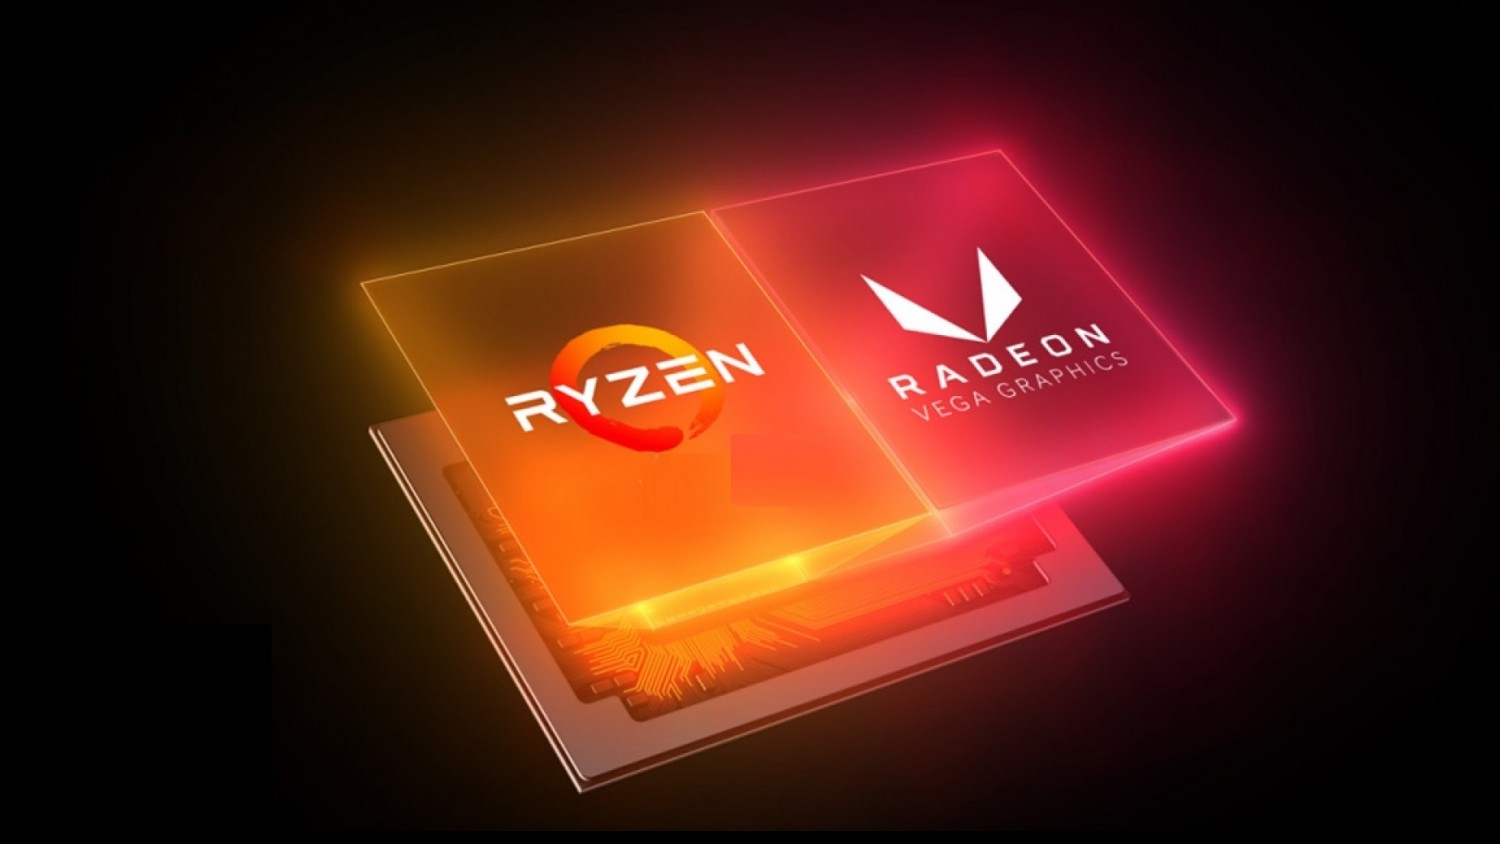 Подробности о AMD Ryzen 9 3950X и Radeon RX 5700 XT до анонса